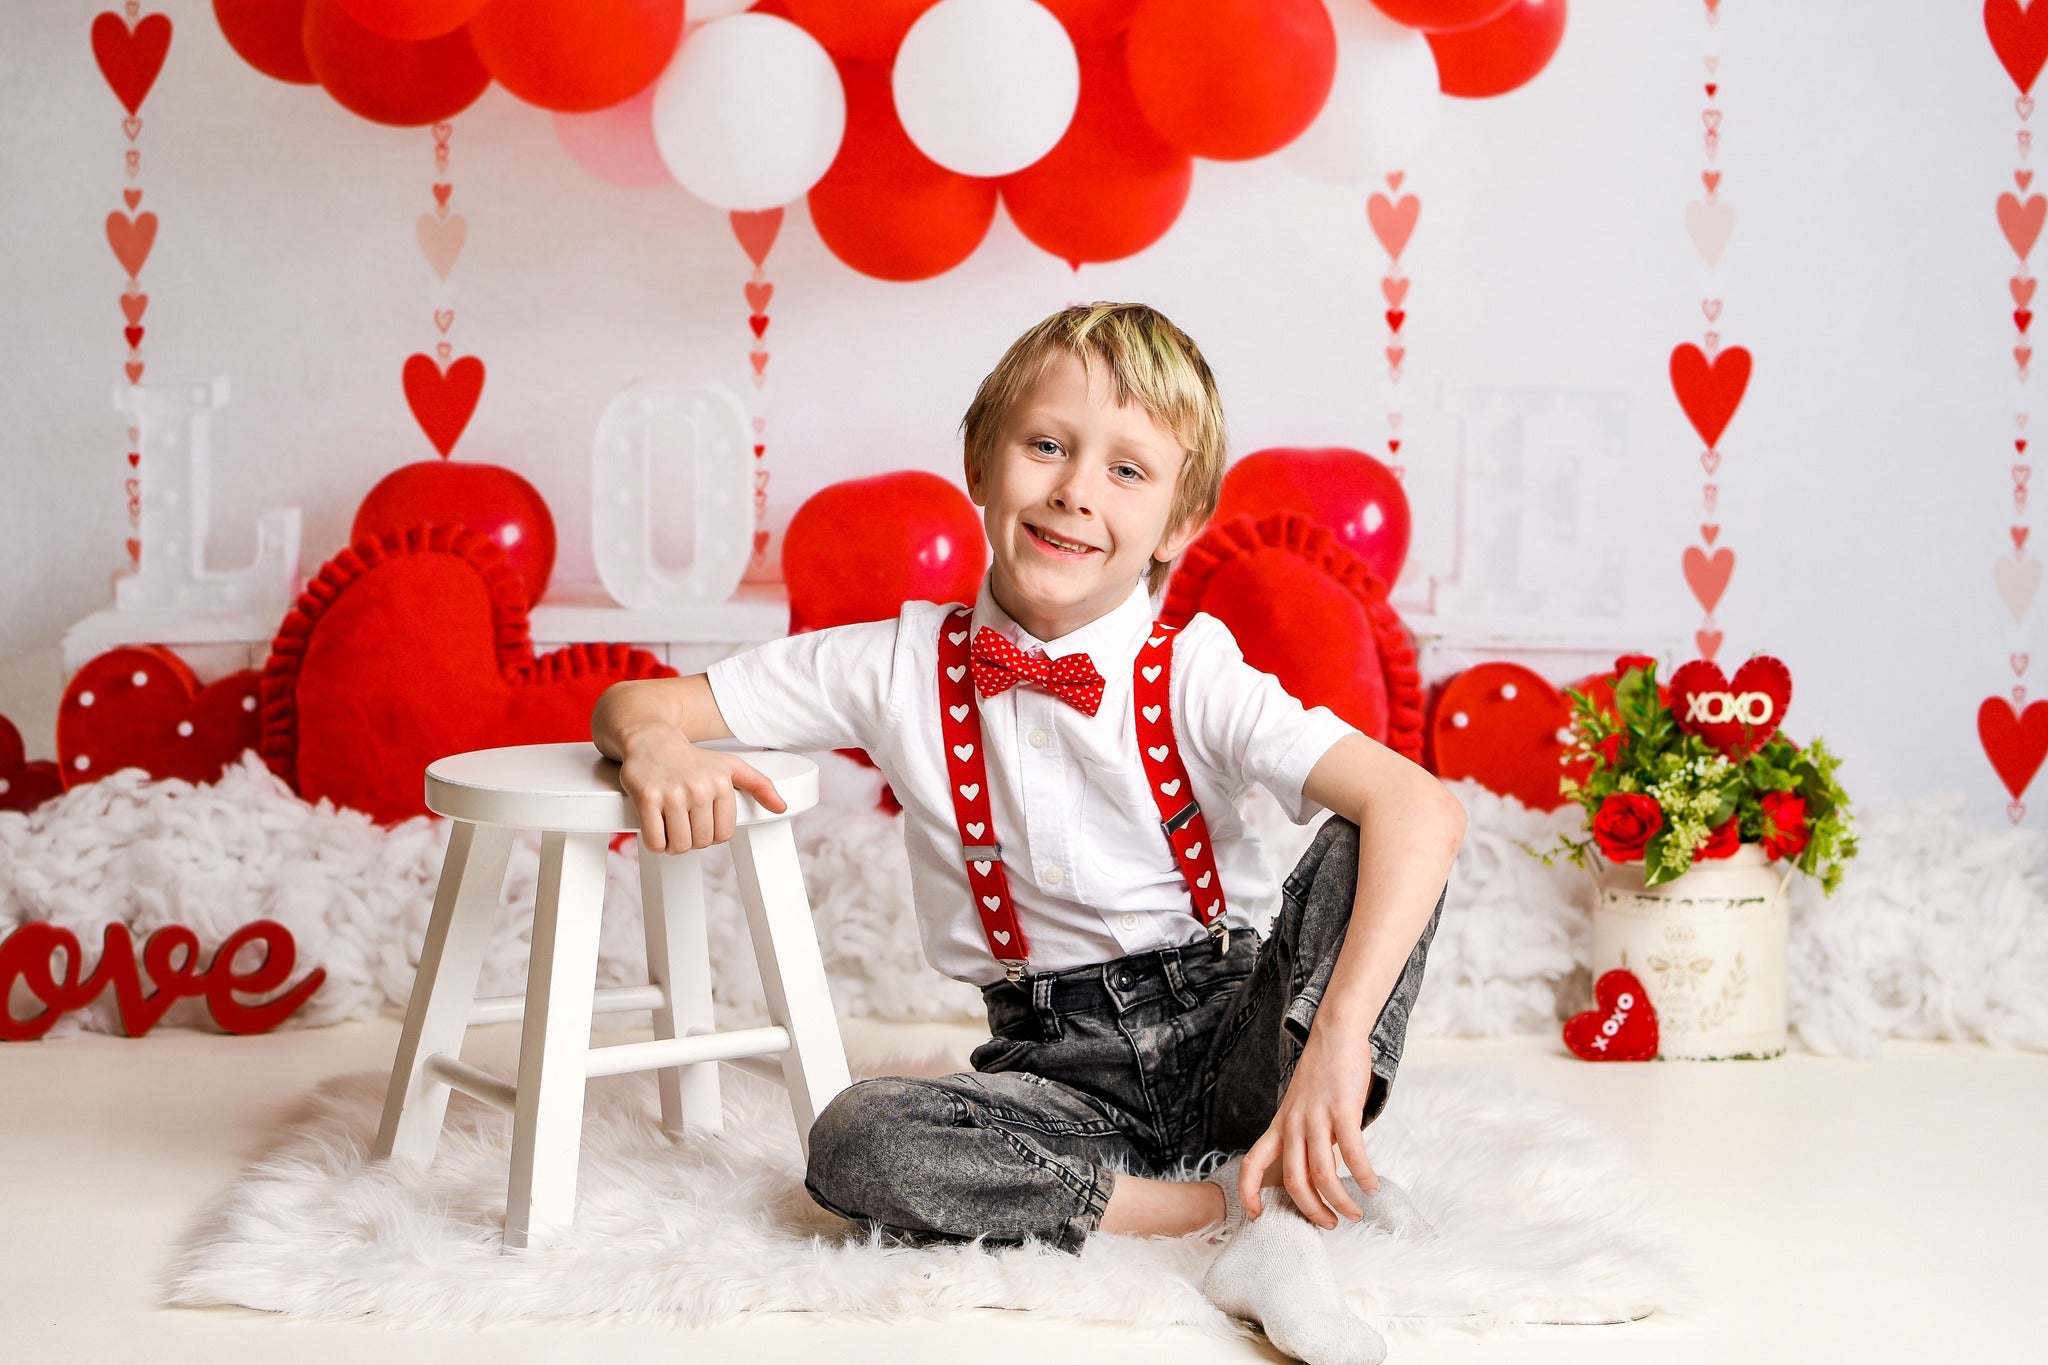 Kate Saint Valentin Ballons Amour Coeur Toile de fond conçue par Uta Mueller